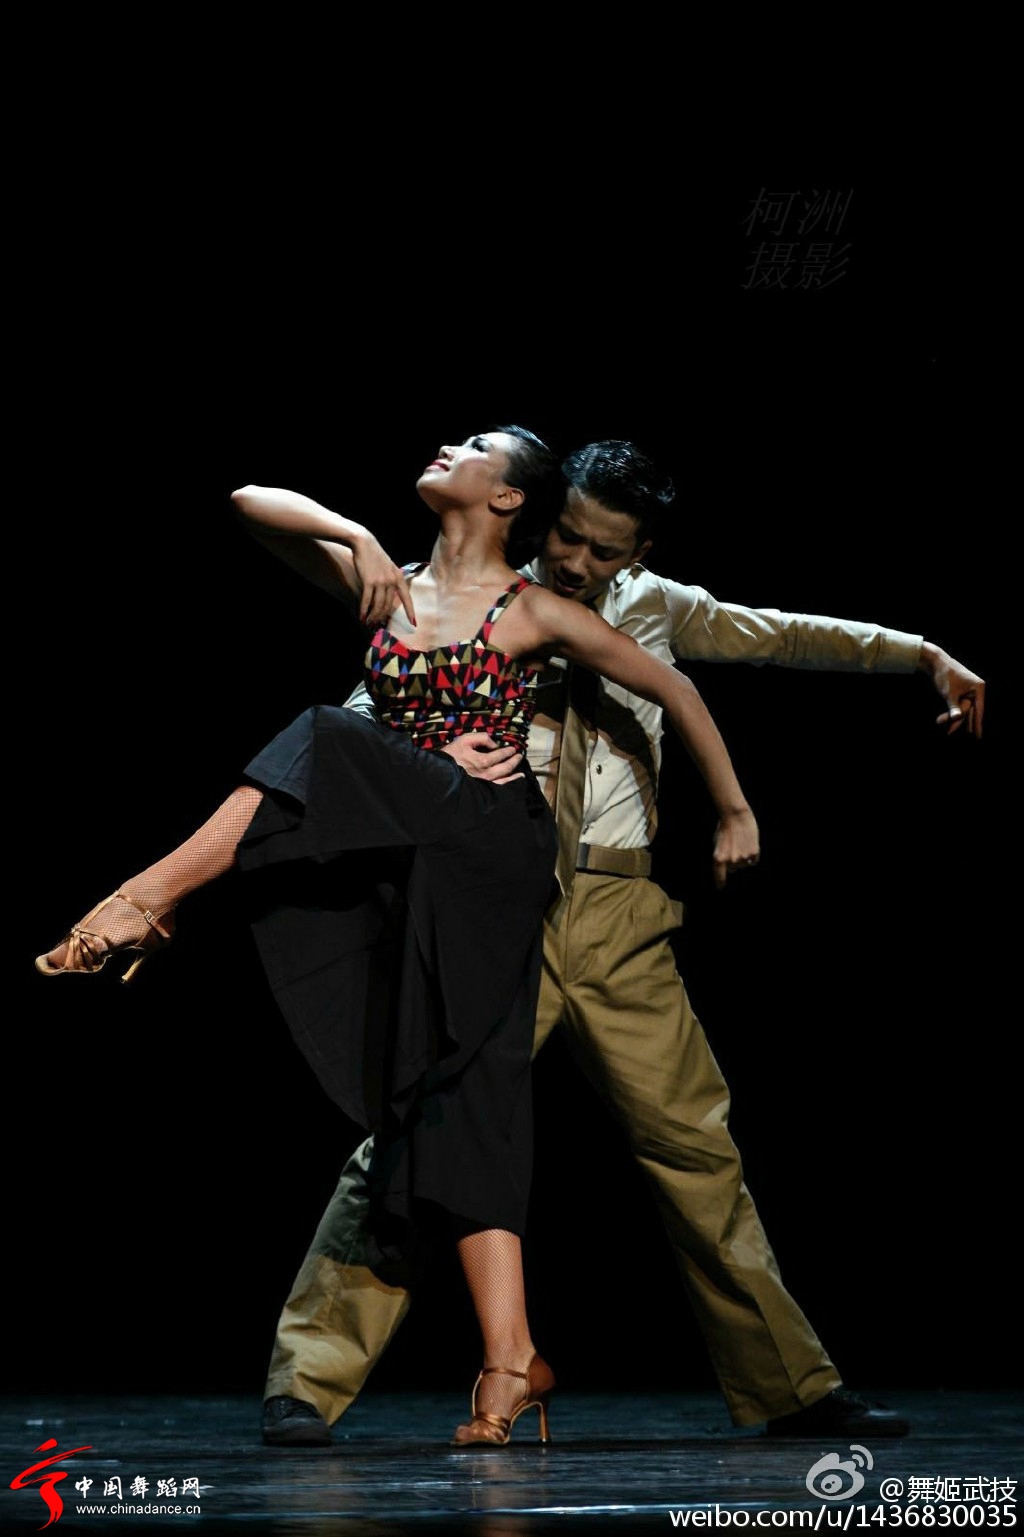 北京舞蹈学院社会舞蹈系2012级国标班毕业晚会15.jpg